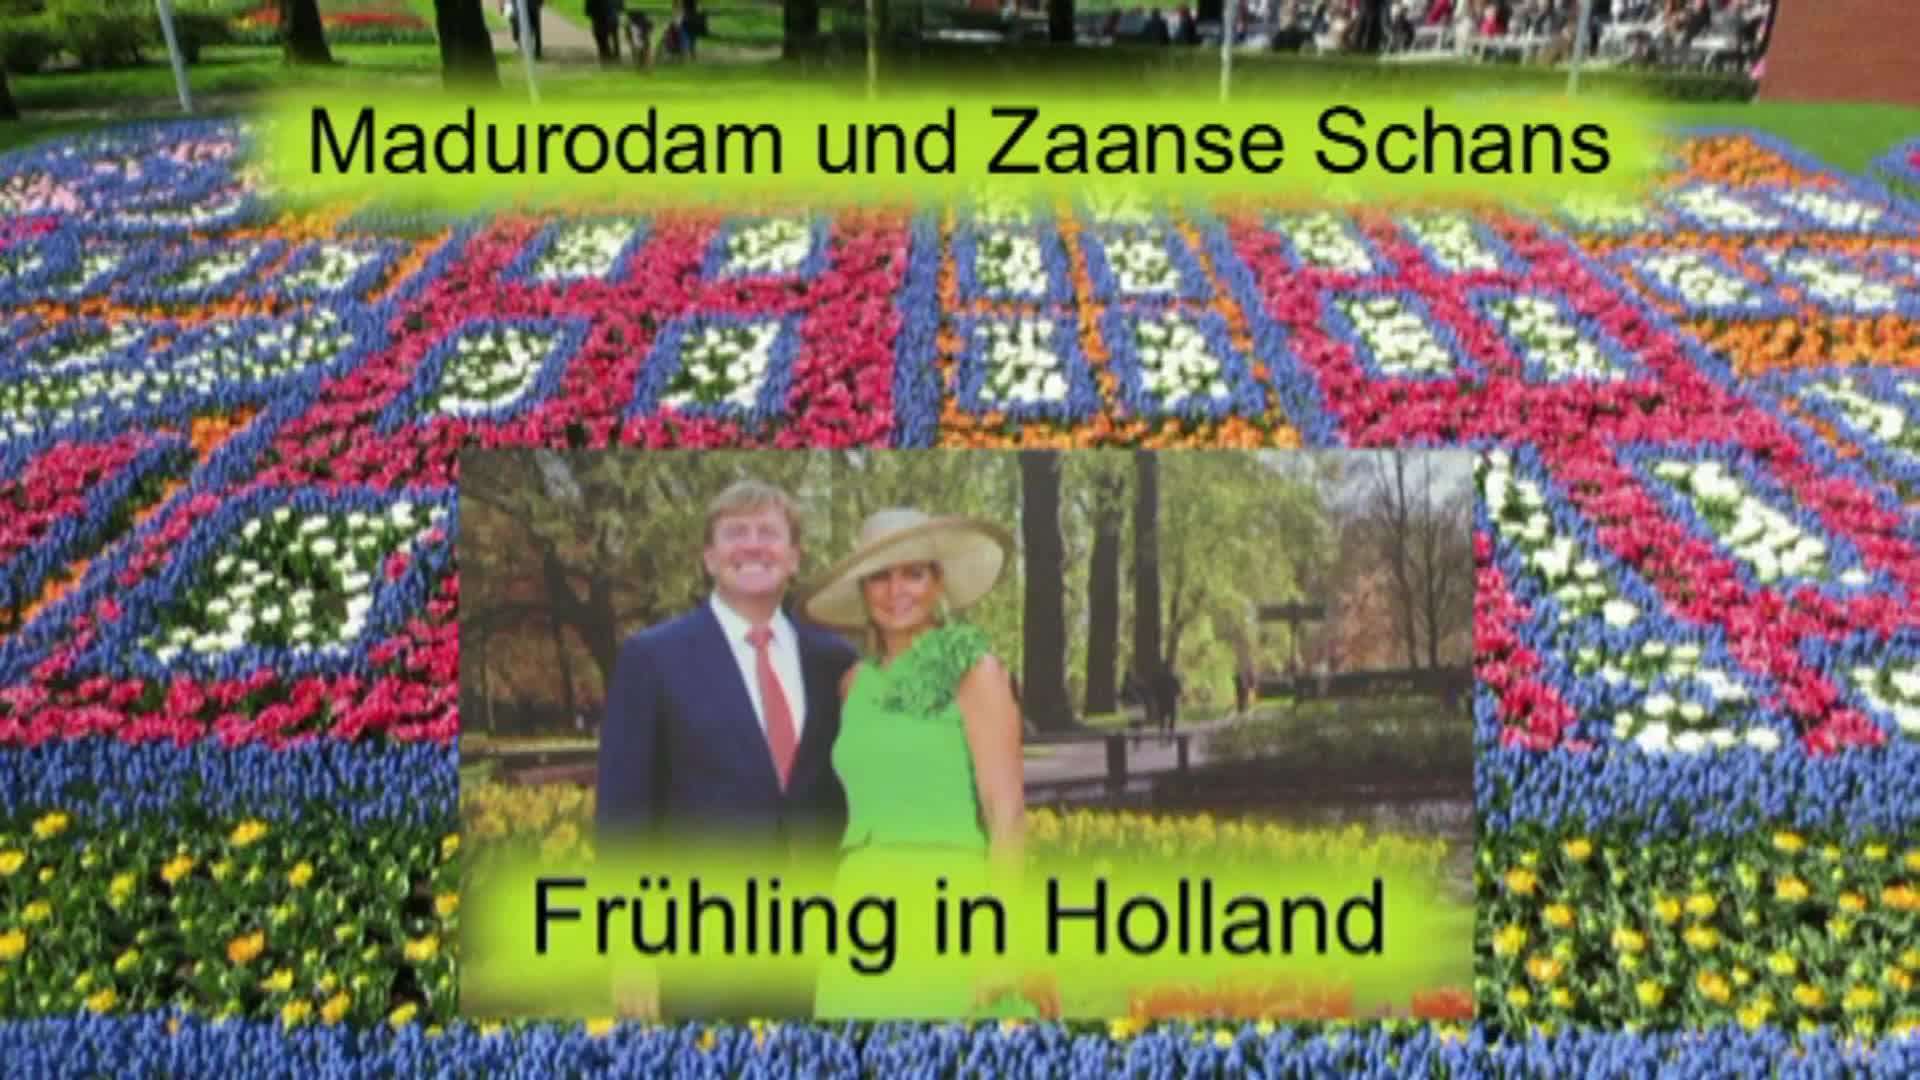 Frühling in Holland (3) Madurodam und Zaanse-Schans